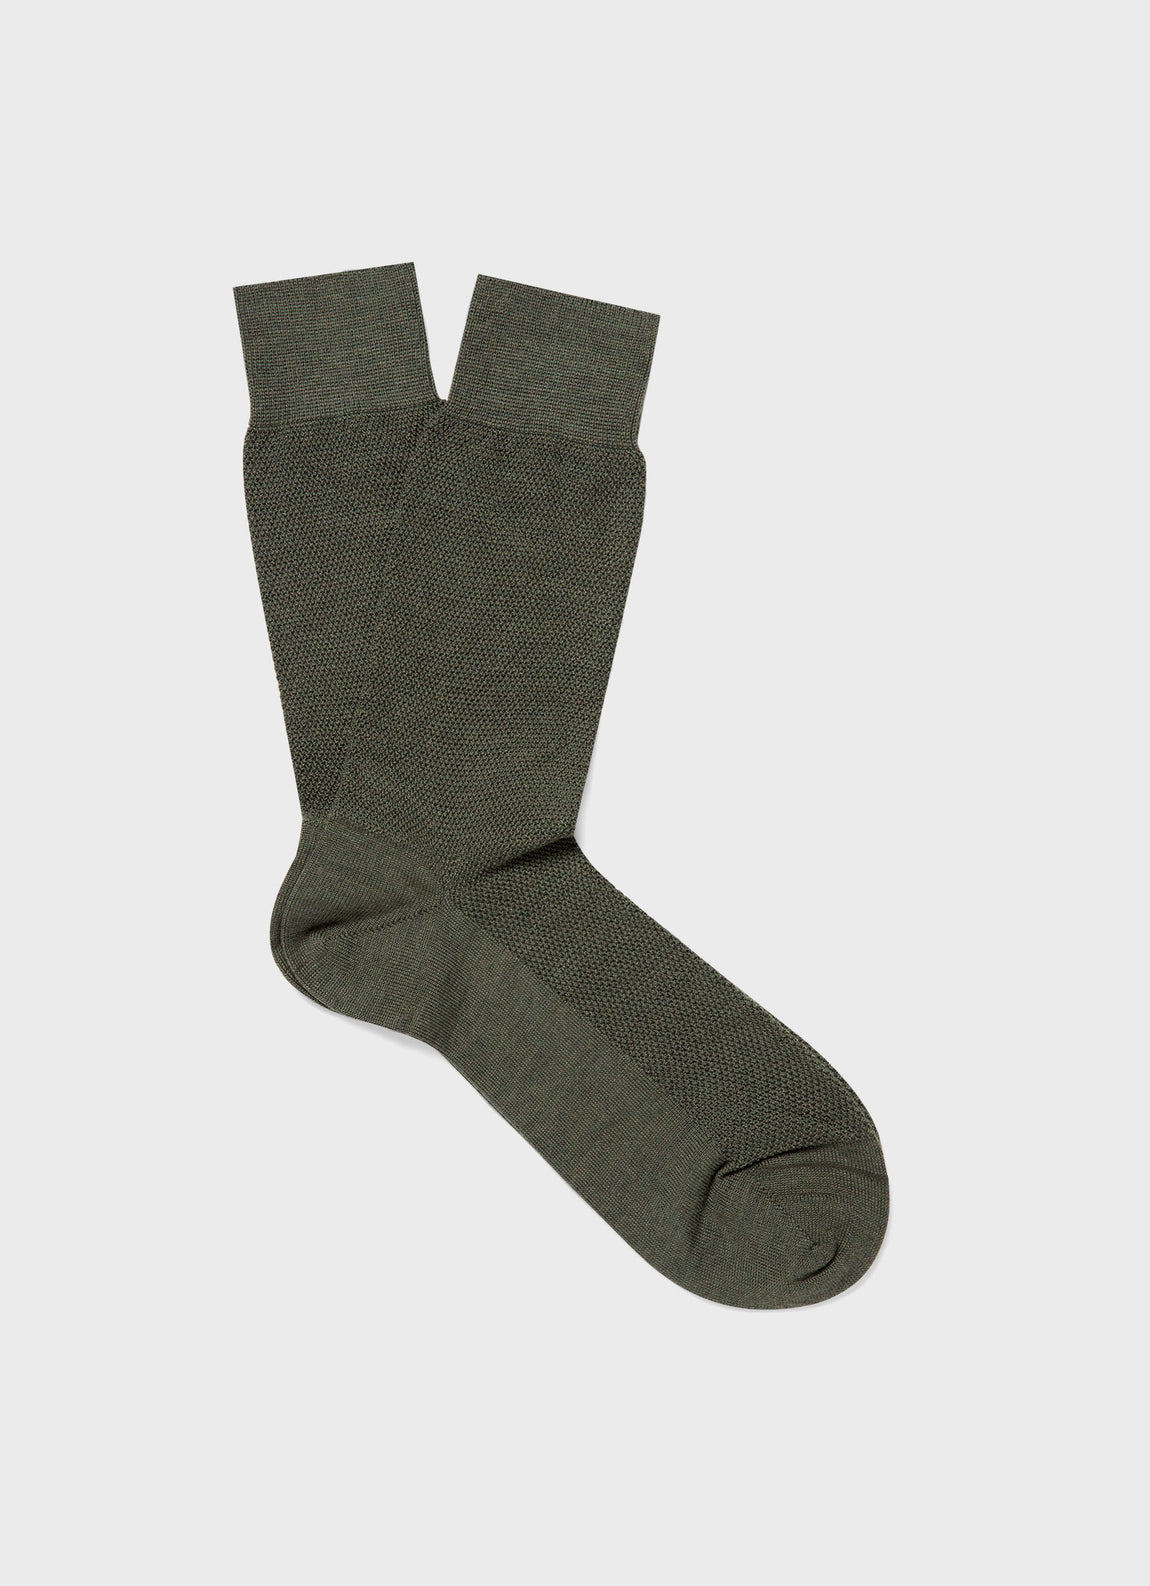 Men's Merino Wool Waffle Socks in Dark Olive | Sunspel